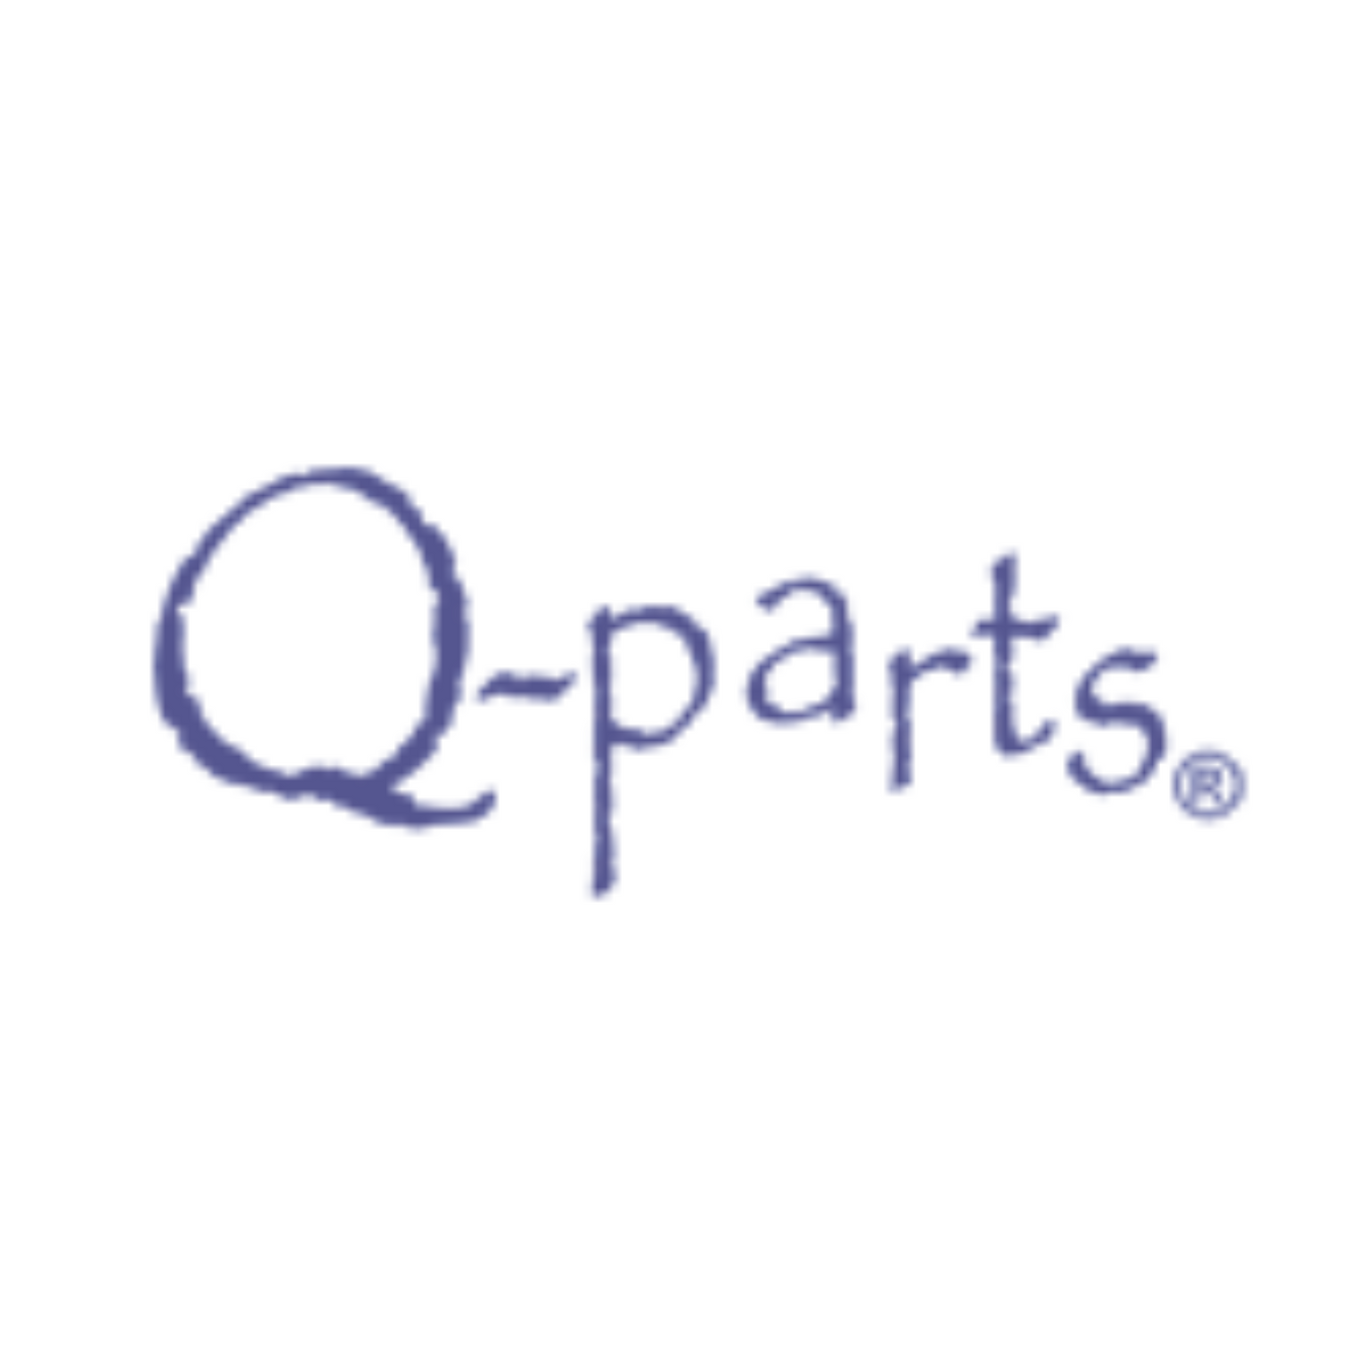 Q-Parts